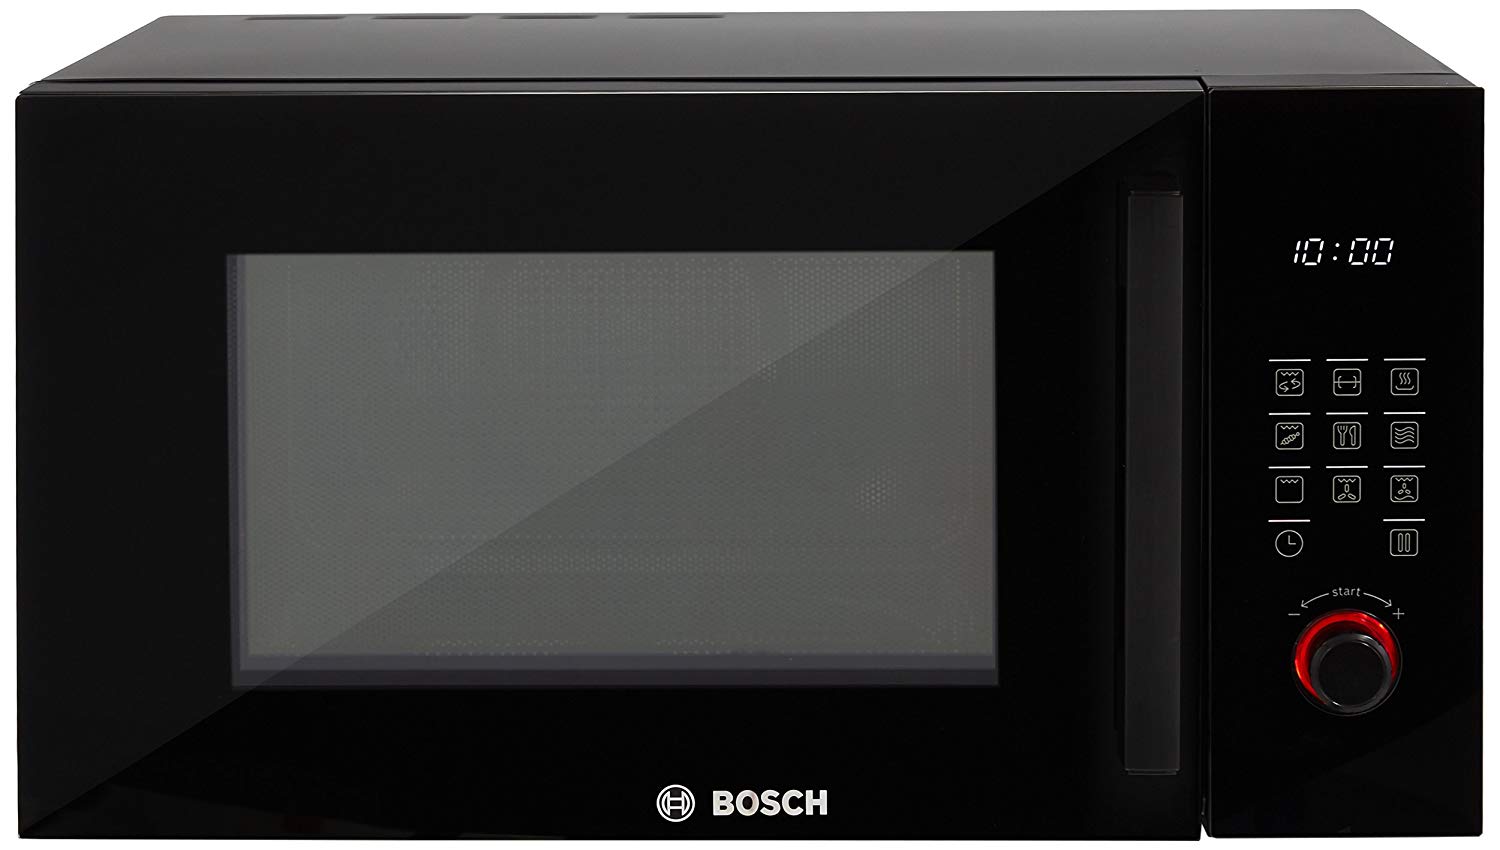 Печь бош купить. Микроволновая печь встраиваемая Bosch bfl524mb0. Микроволновая печь встраиваемая Bosch bfl623mc3. Микроволновая печь Bosch bel554ms0. Микроволновая печь встраиваемая Bosch bel554ms0.